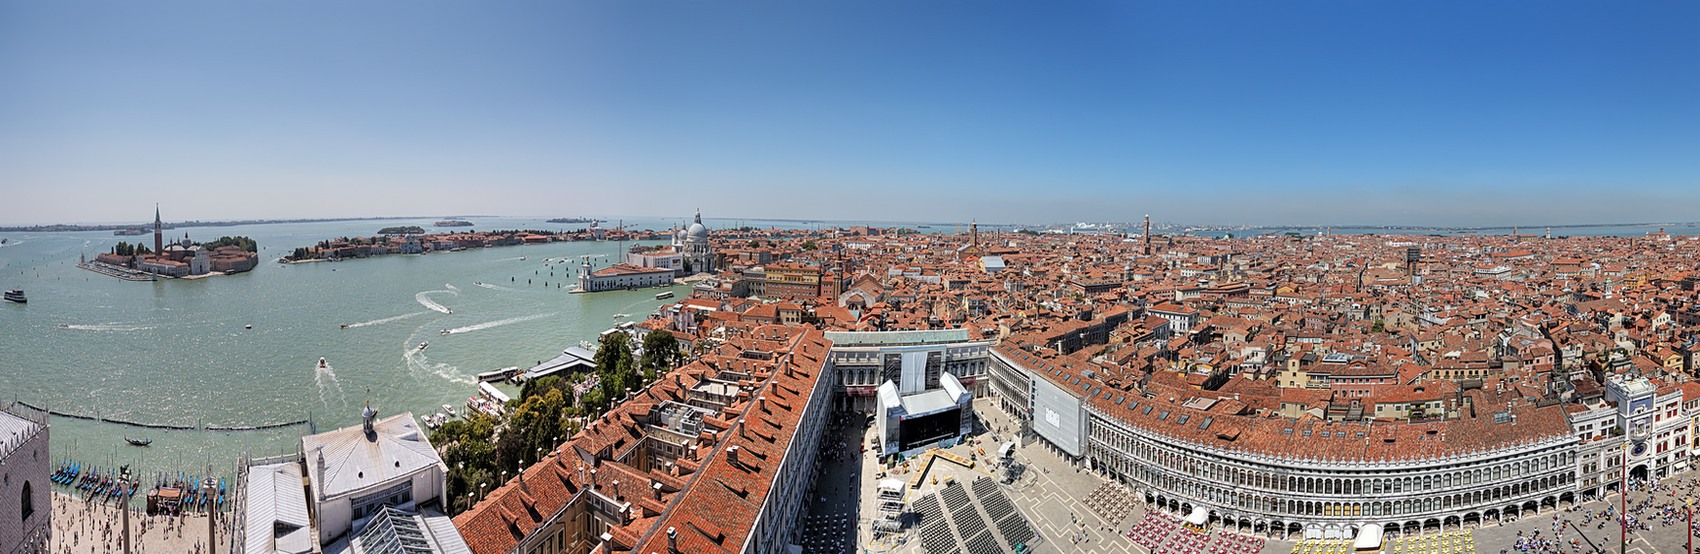 фото "Панорама Венеции" метки: панорама, путешествия, Европа